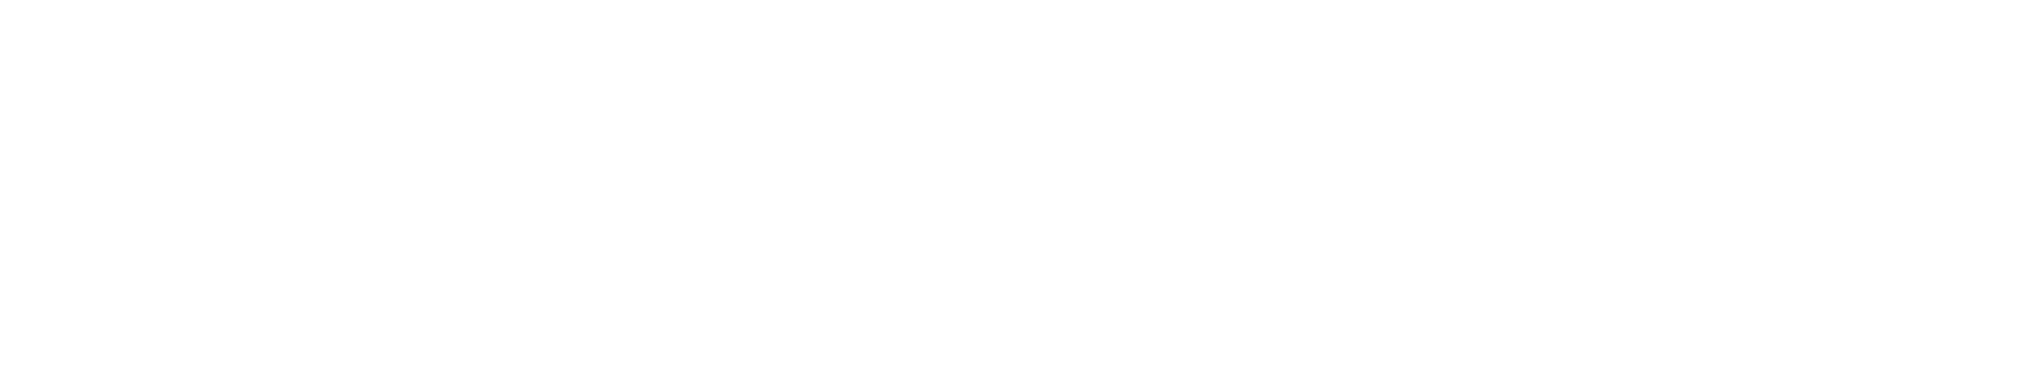 Mudwtr logo